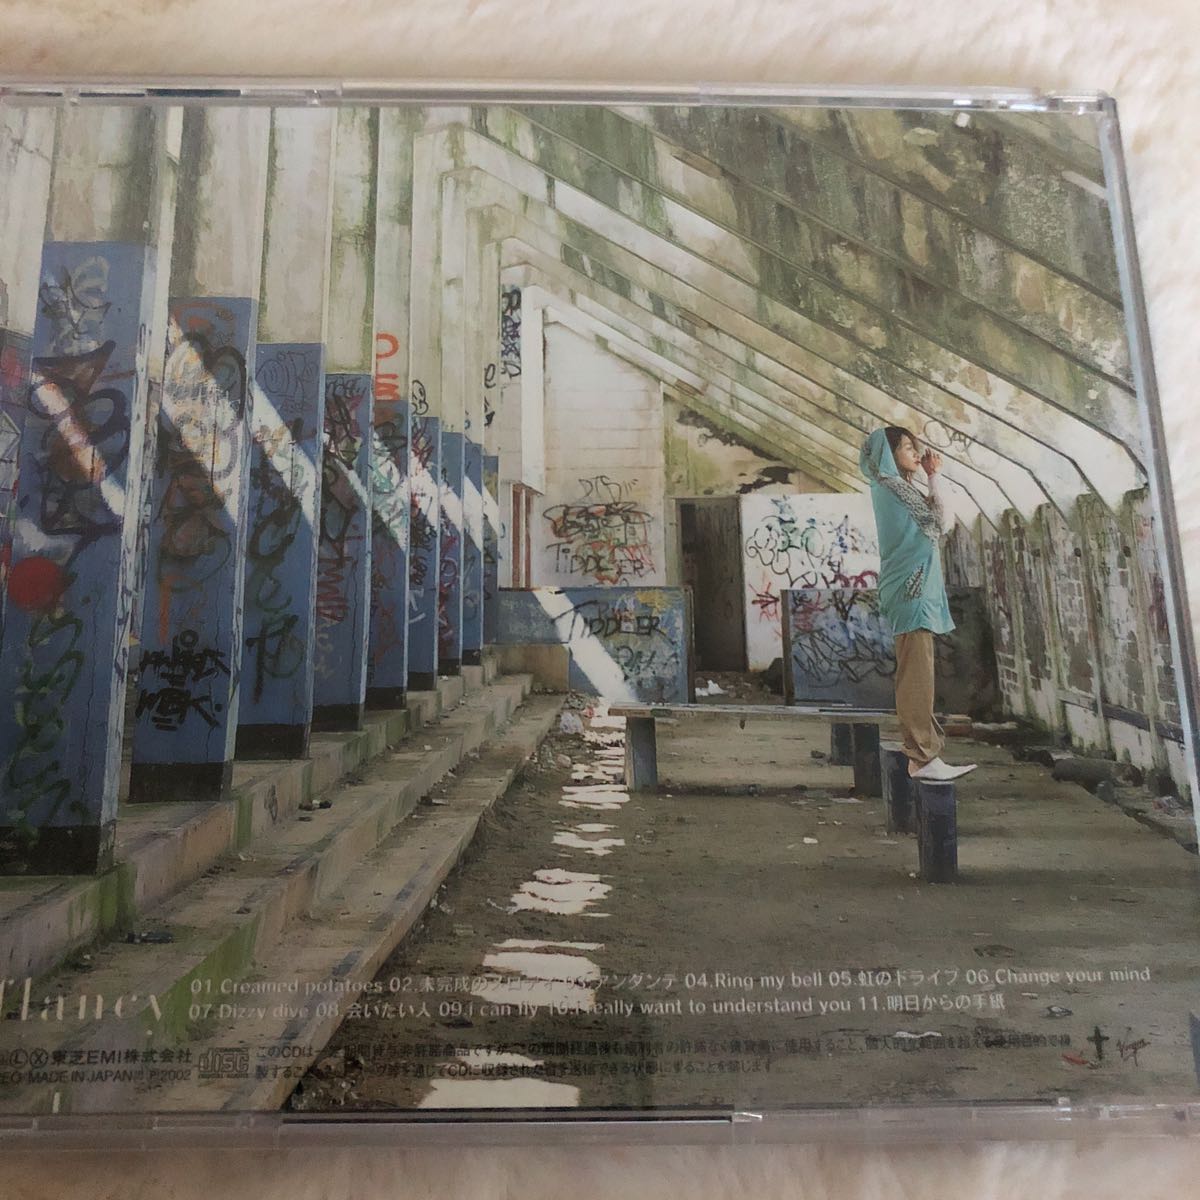 矢井田瞳　 『i/flancy』帯付き CD